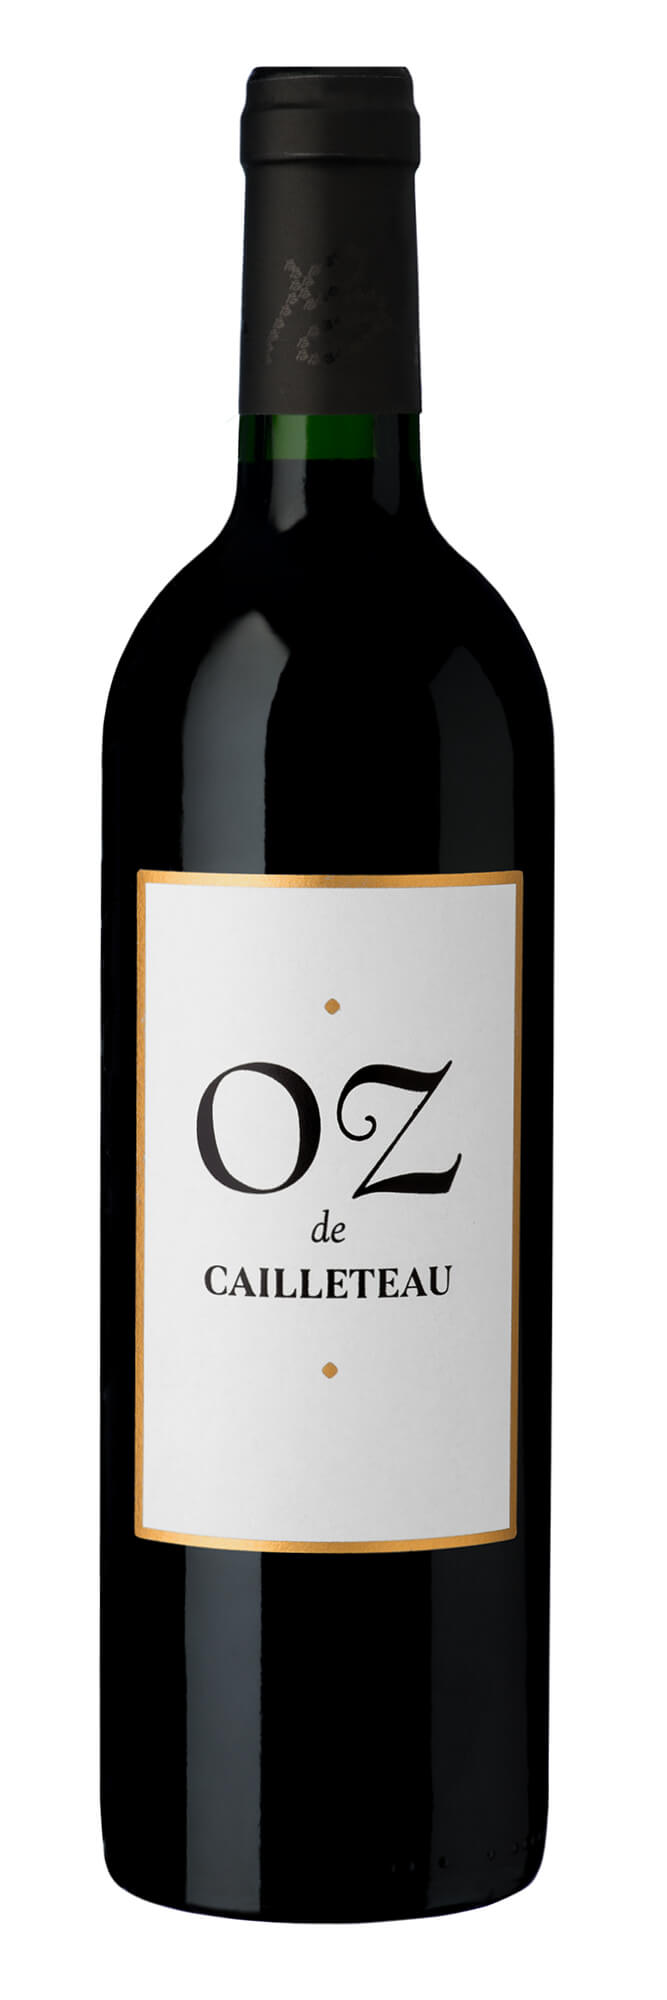 21032_Ch_Cailleteau_Bergeron_OZ_de_Cailleteau_Blaye_Cotes_de_Bordeaux